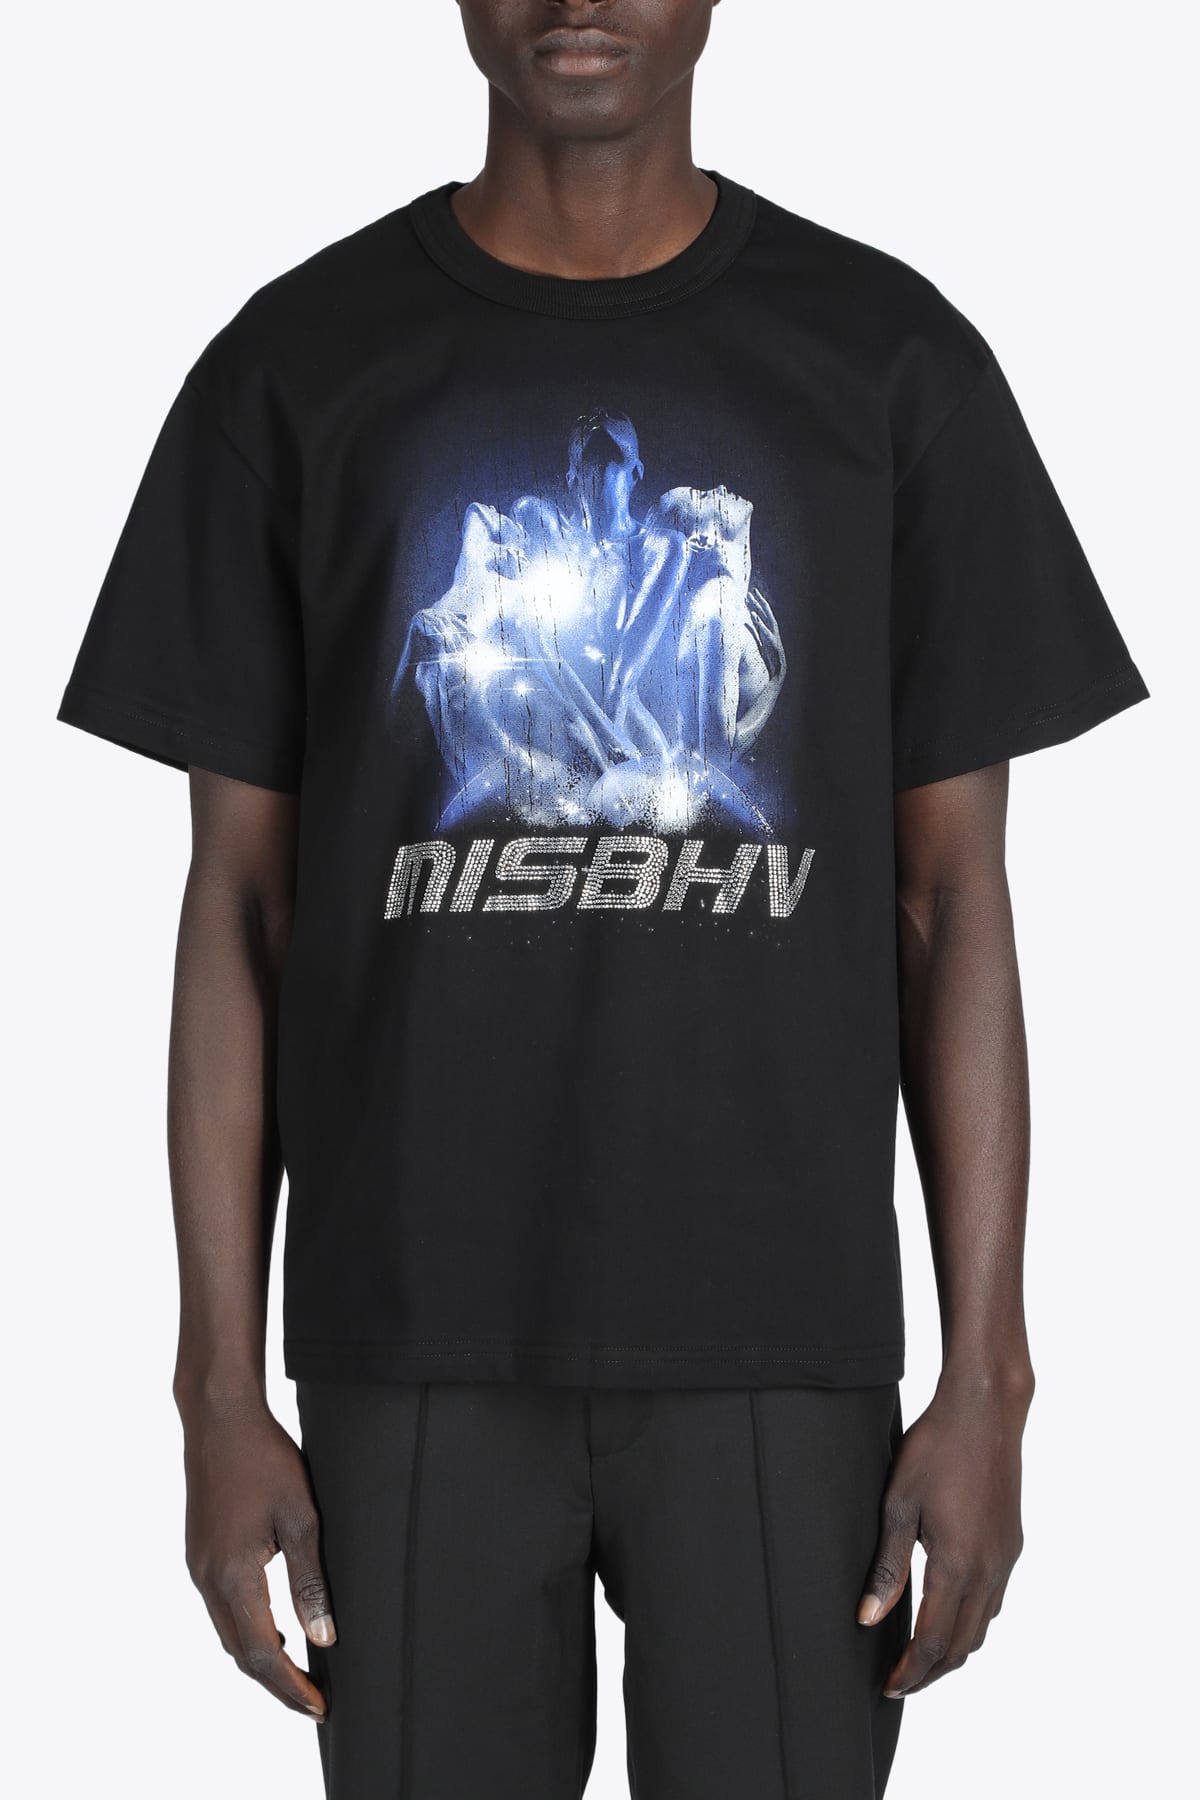 MISBHV 2001 Polizei T-shirt